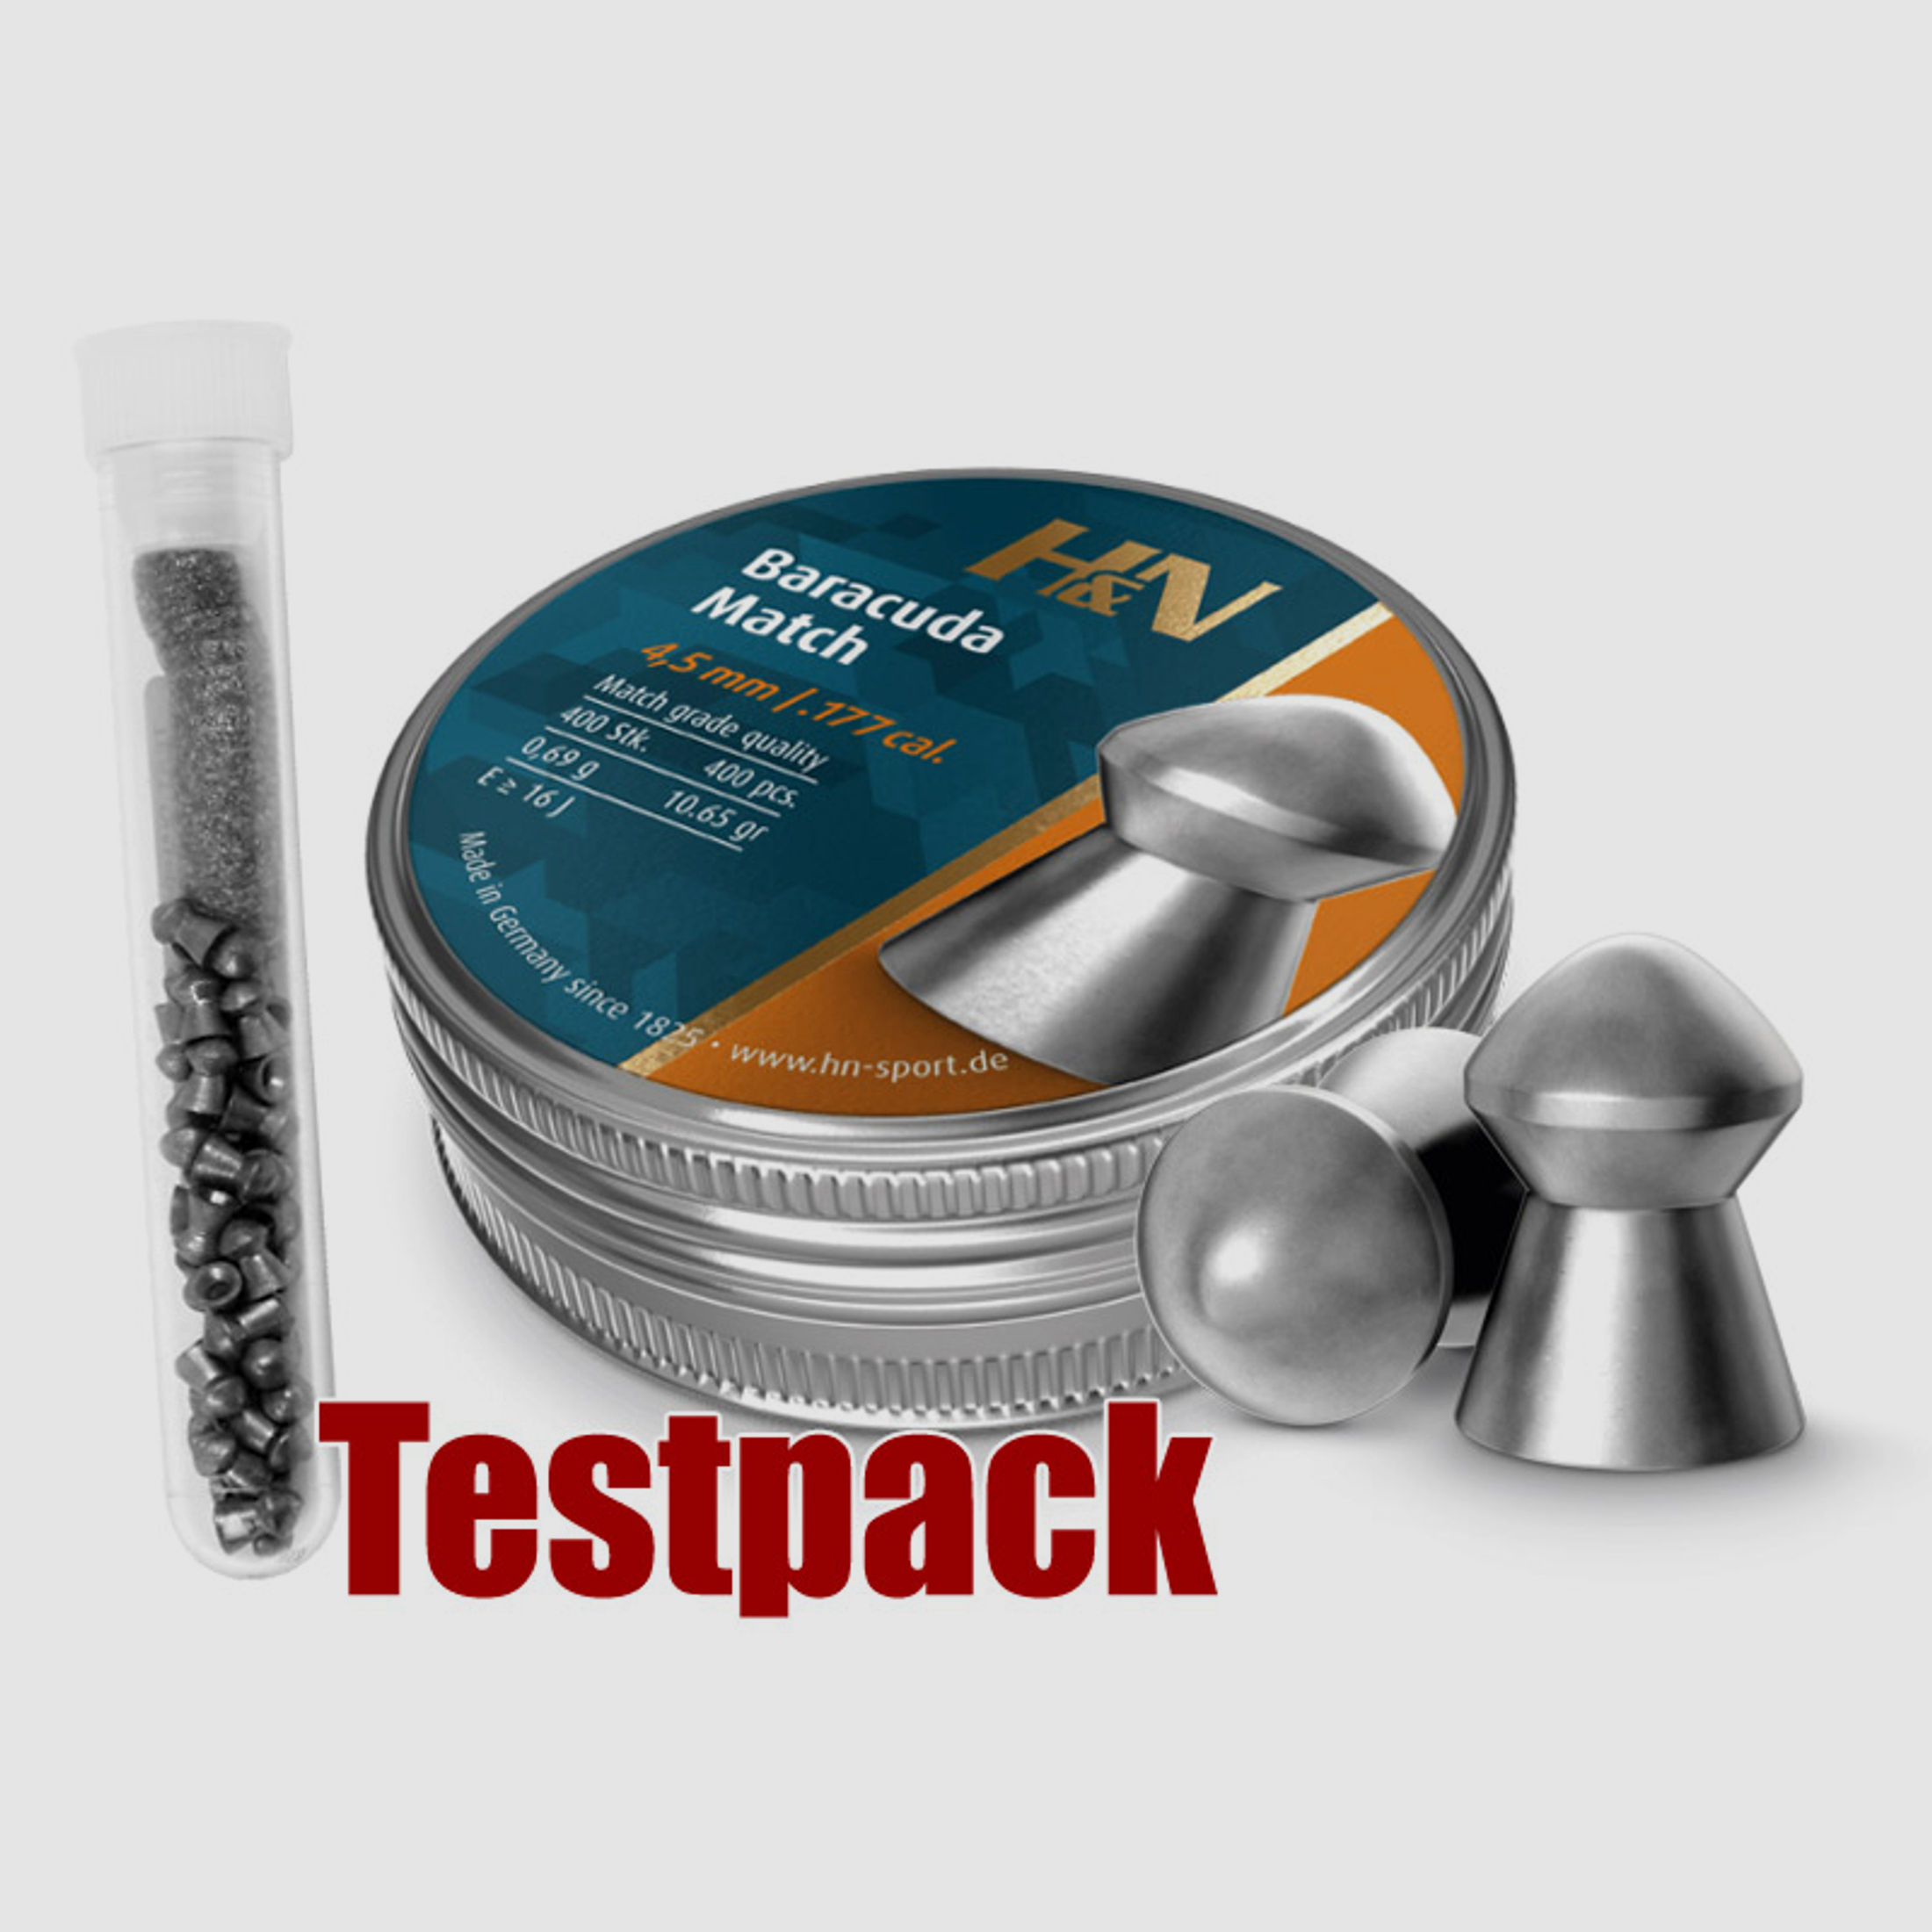 Testpack - H&N Baracuda Match Diabolo, Rundkopf, glatt, 0,69 g, Kaliber 4,52 mm, 40 StĂĽck